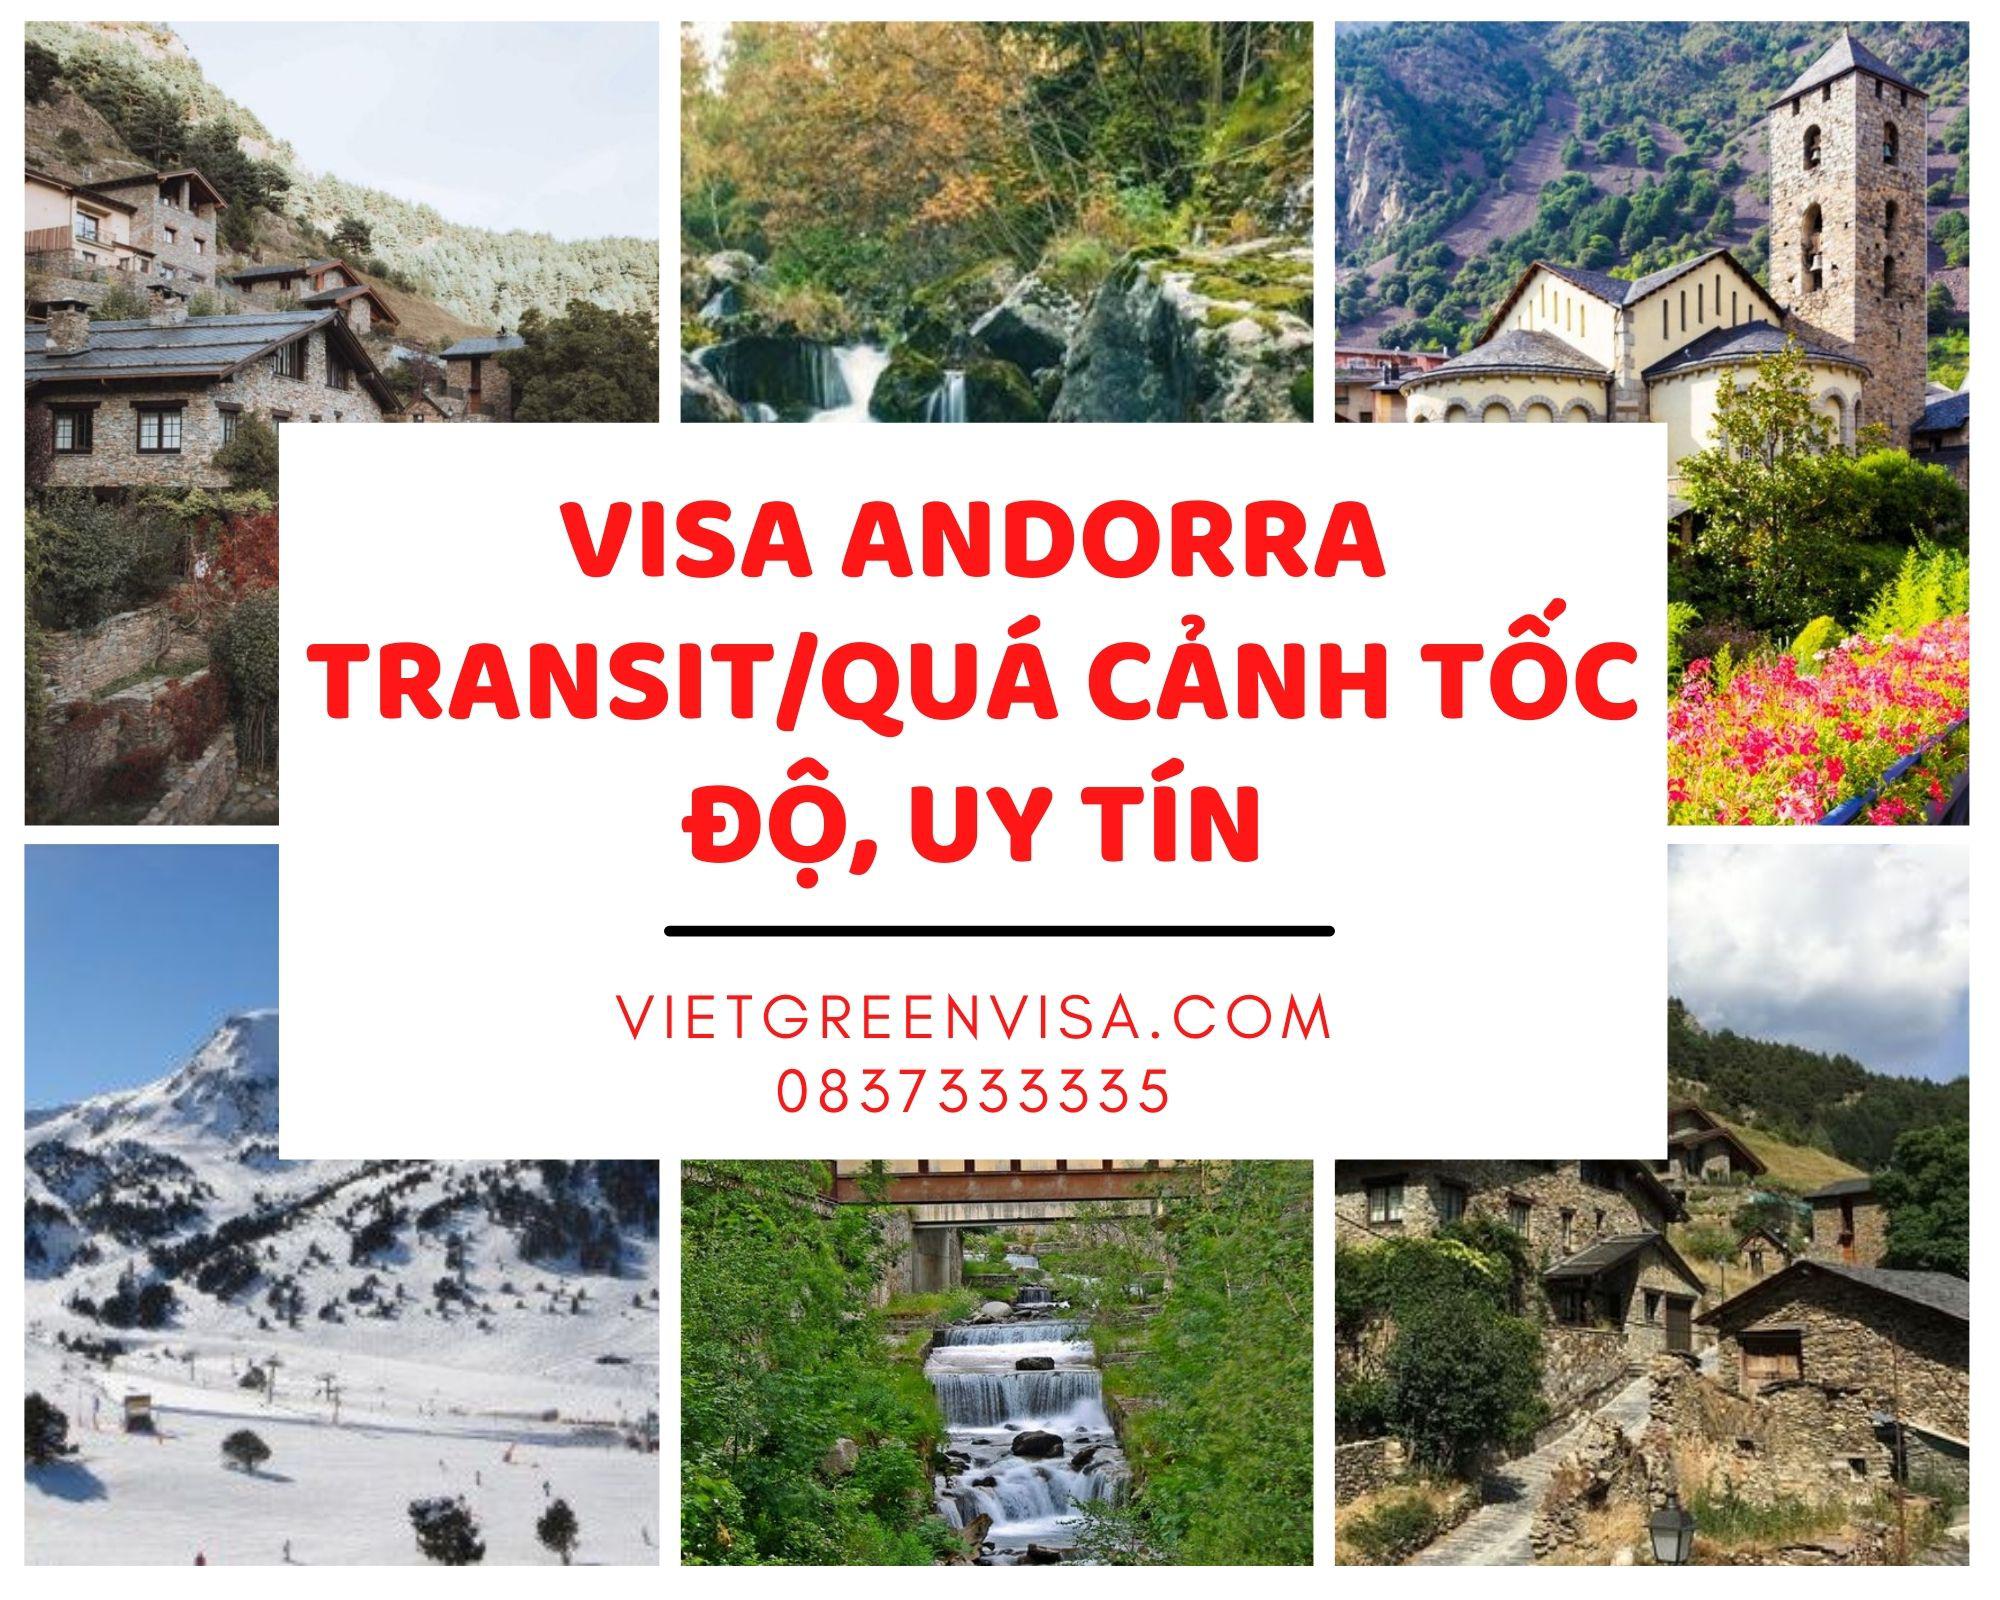 Tư vấn visa Andorra quá cảnh, Làm visa Andorra transit trọn gói